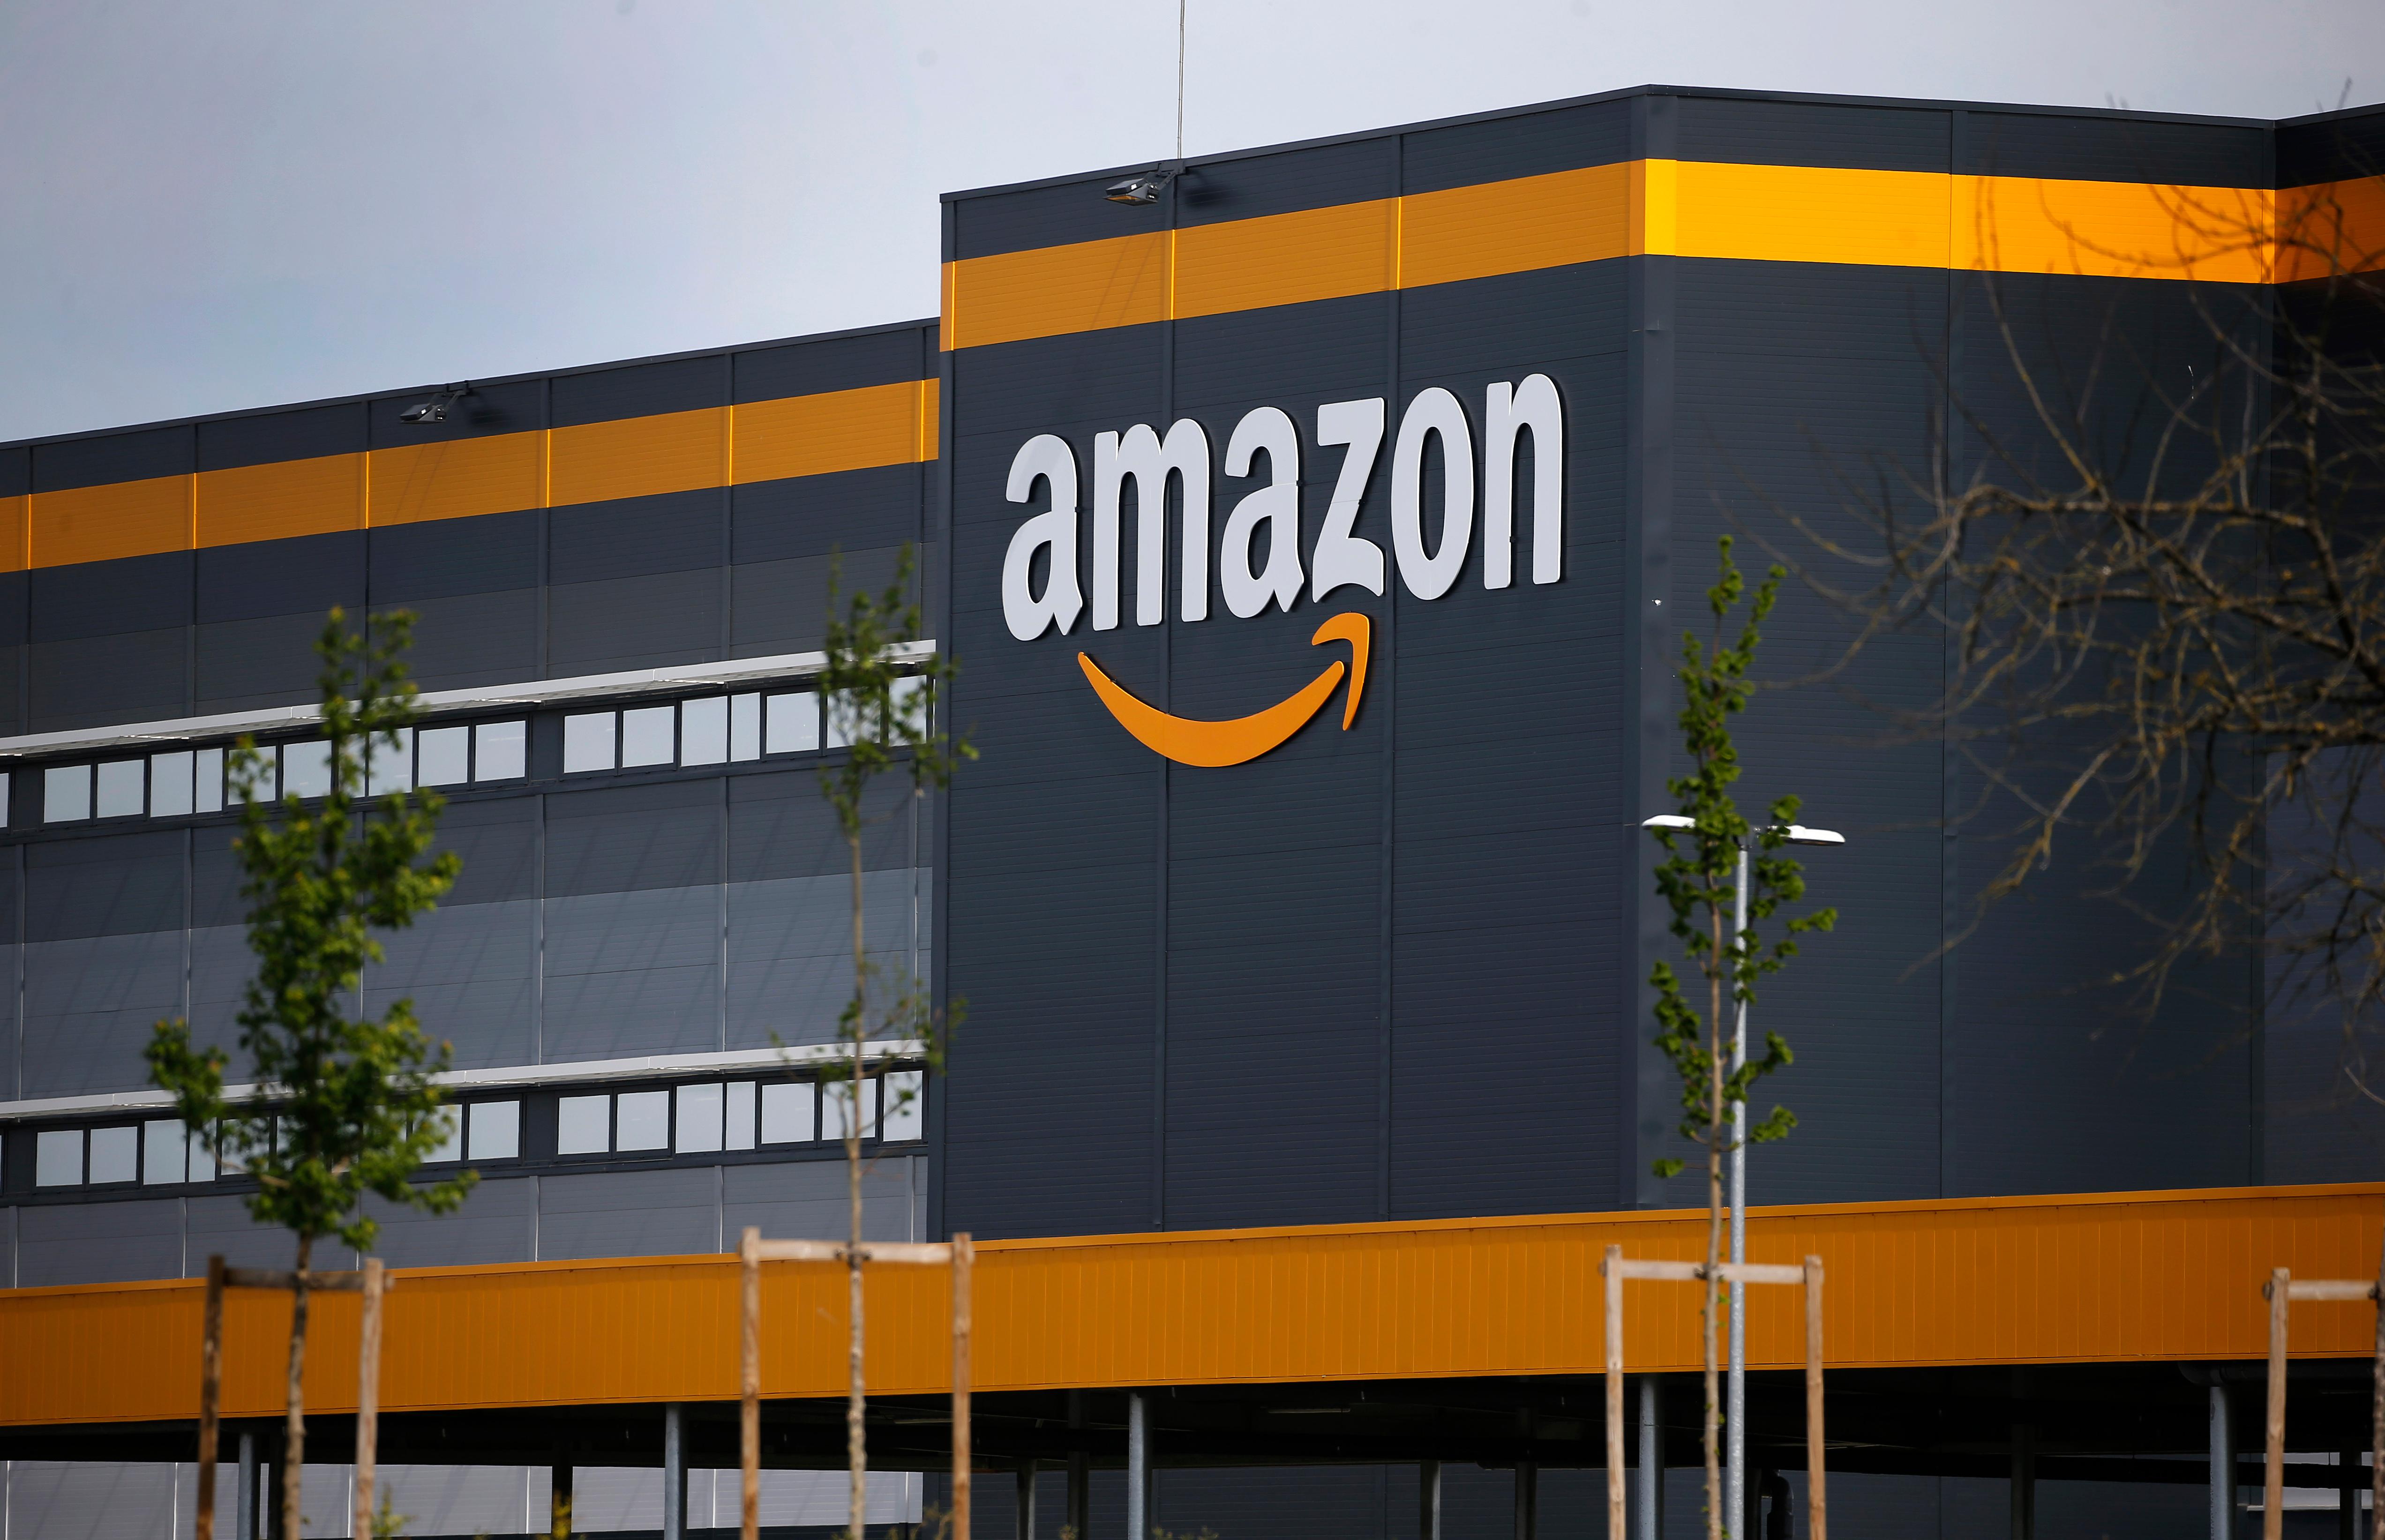 Does Amazon Pay Taxes?